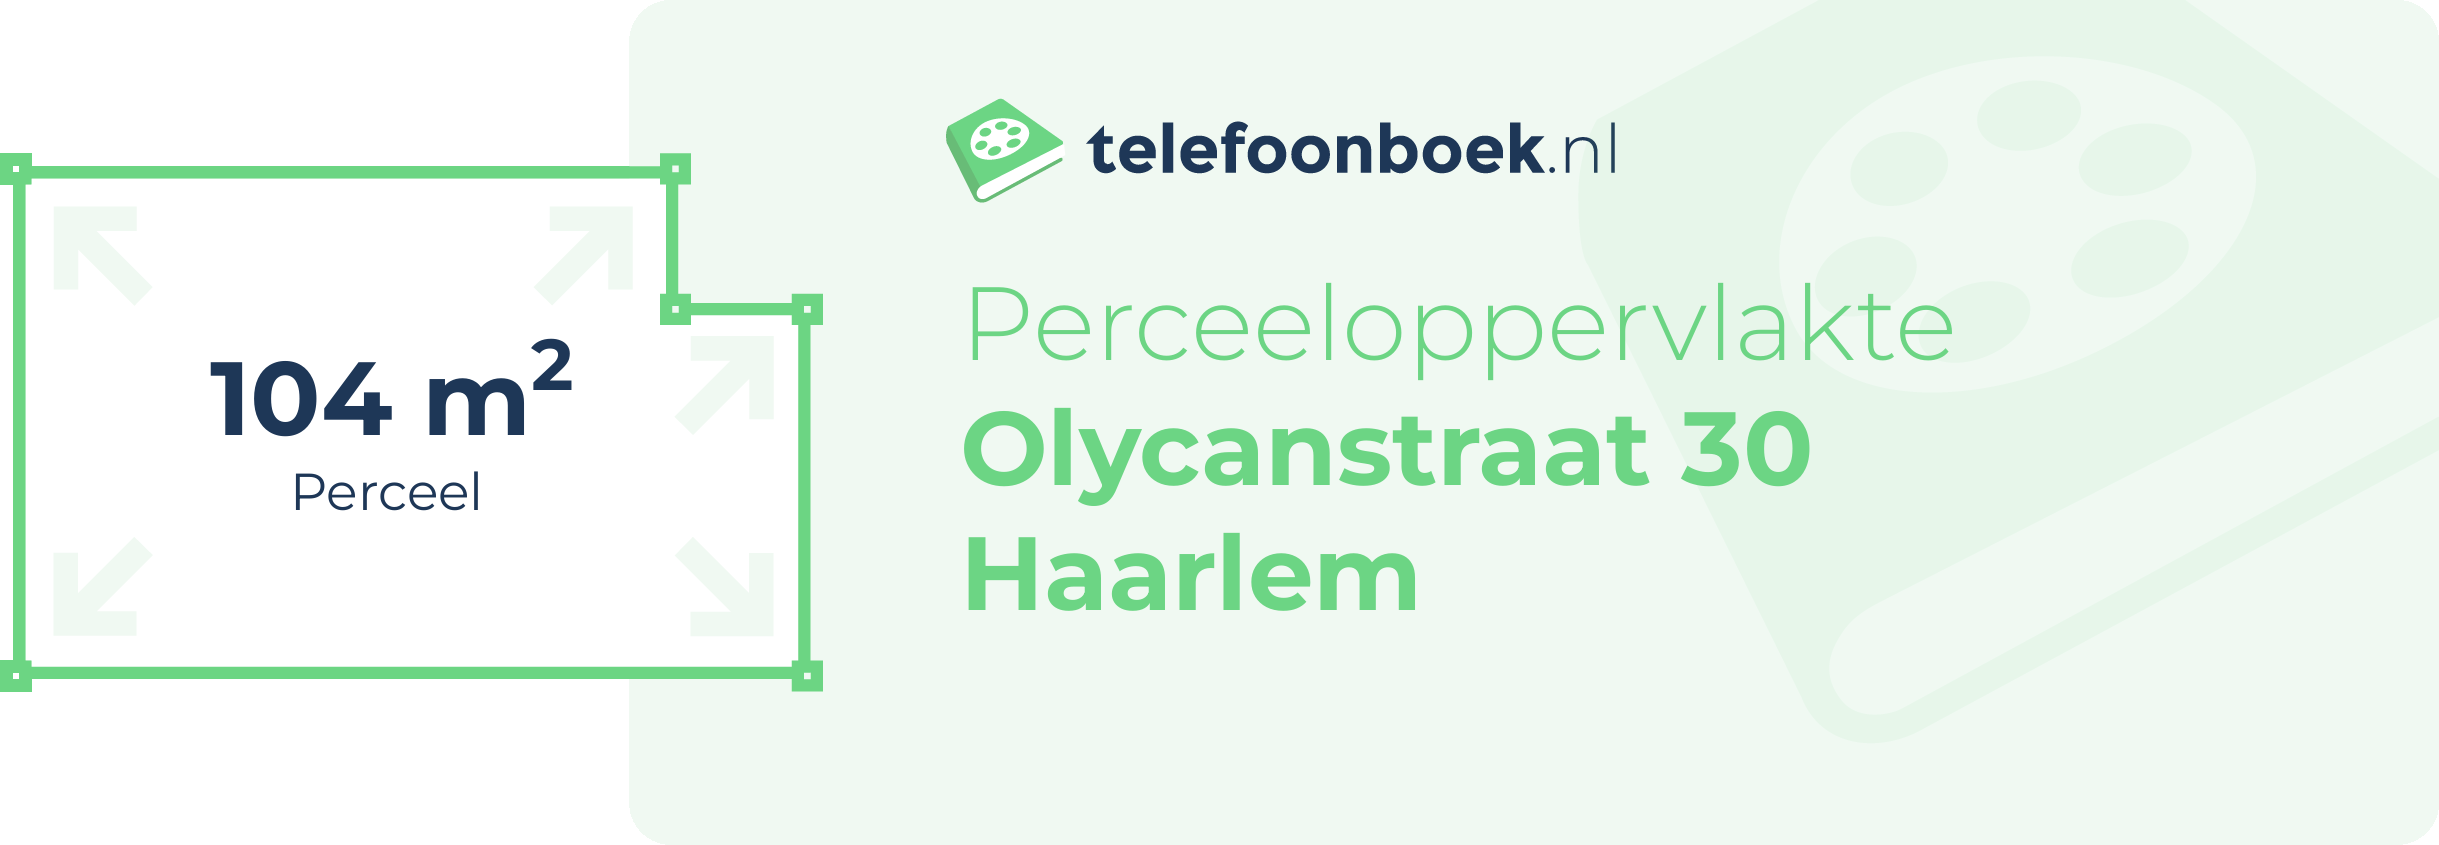 Perceeloppervlakte Olycanstraat 30 Haarlem